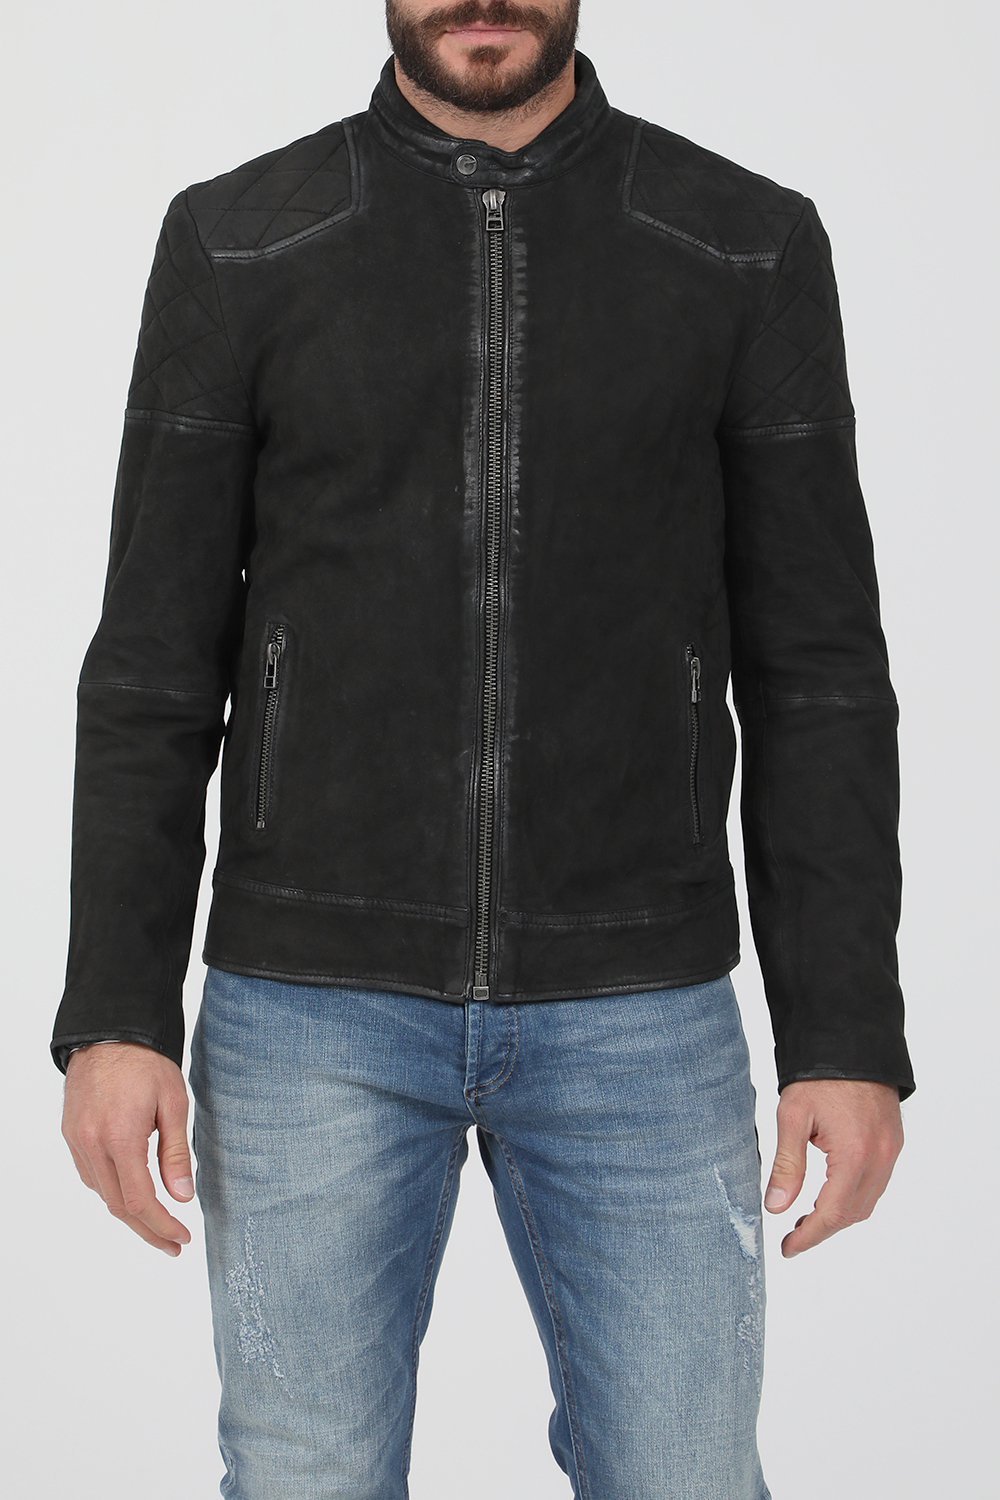 Ανδρικά/Ρούχα/Πανωφόρια/Τζάκετς GOOSECRAFT - Ανδρικό δερμάτινο jacket GOOSECRAFT GC BRENTWOOD BIKER μαύρο